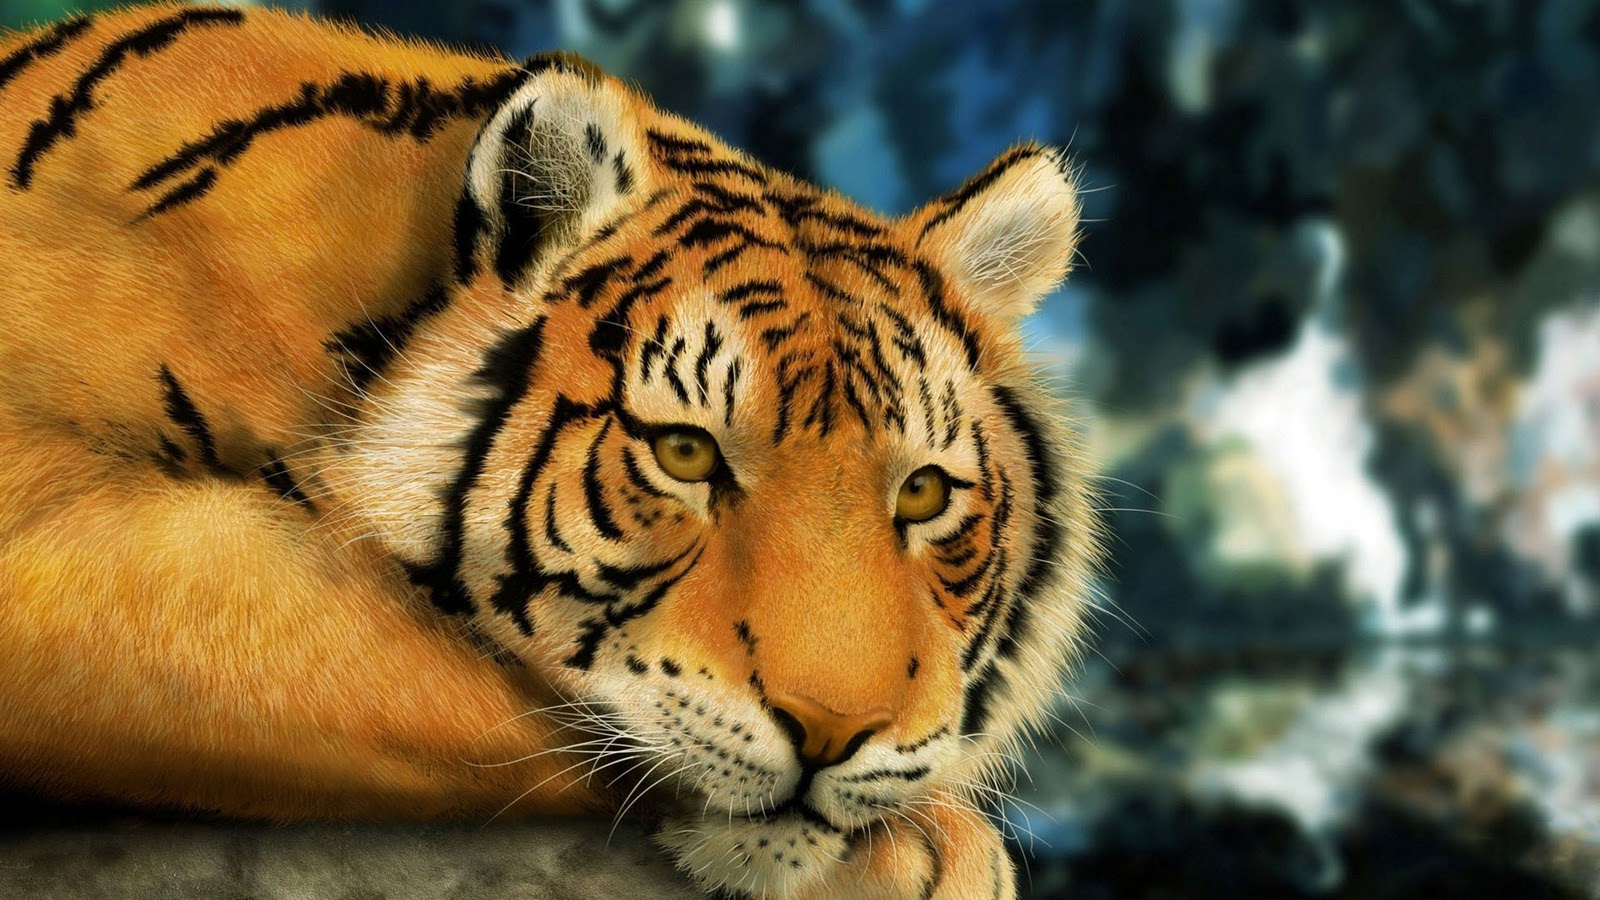 Tiger Wallpapers For Desktop